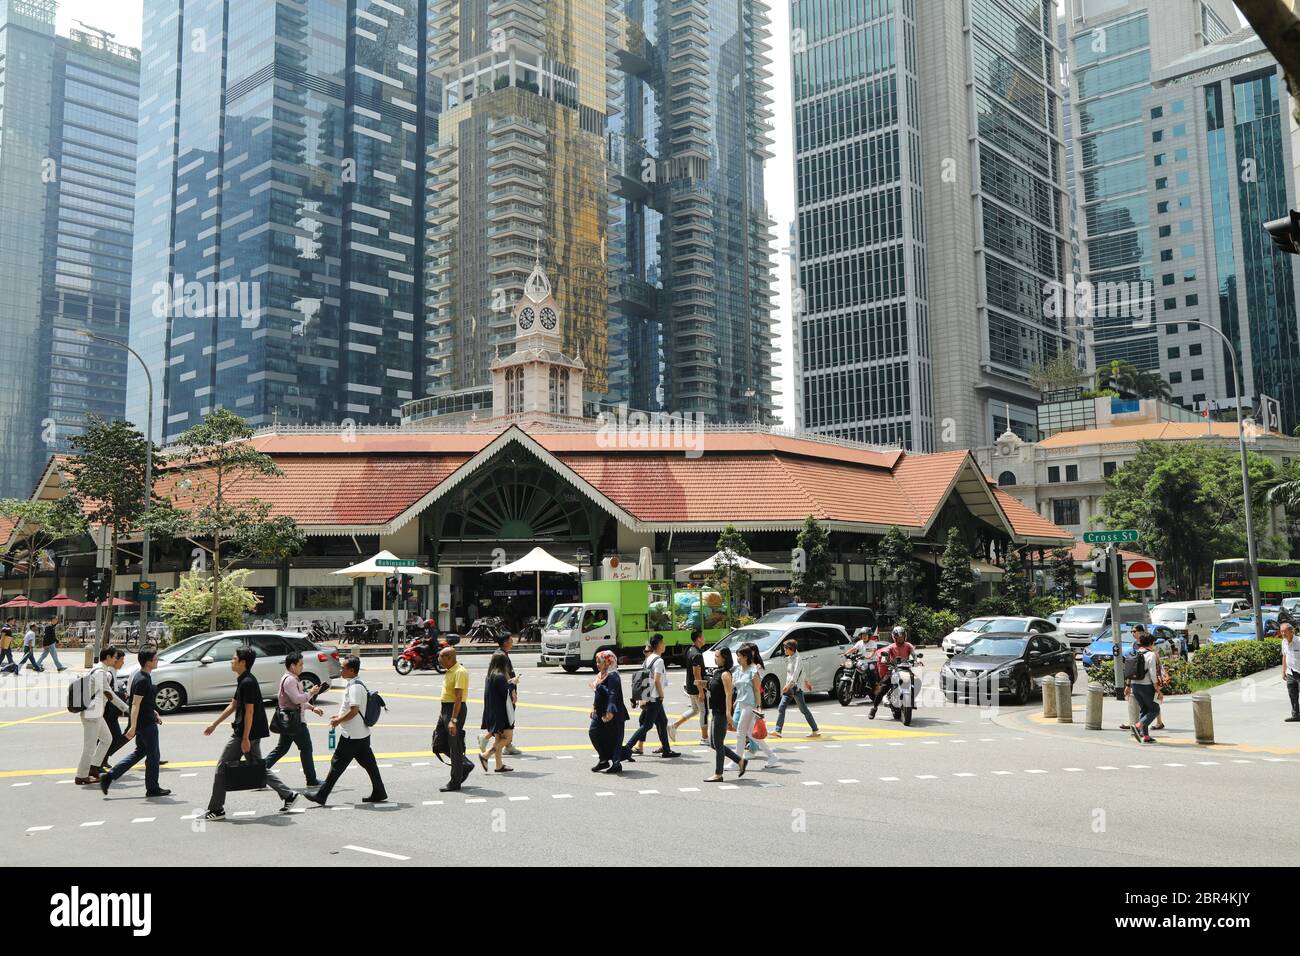 Pedoni che attraversano una strada trafficata nel quartiere centrale degli affari di Singapore. Foto Stock